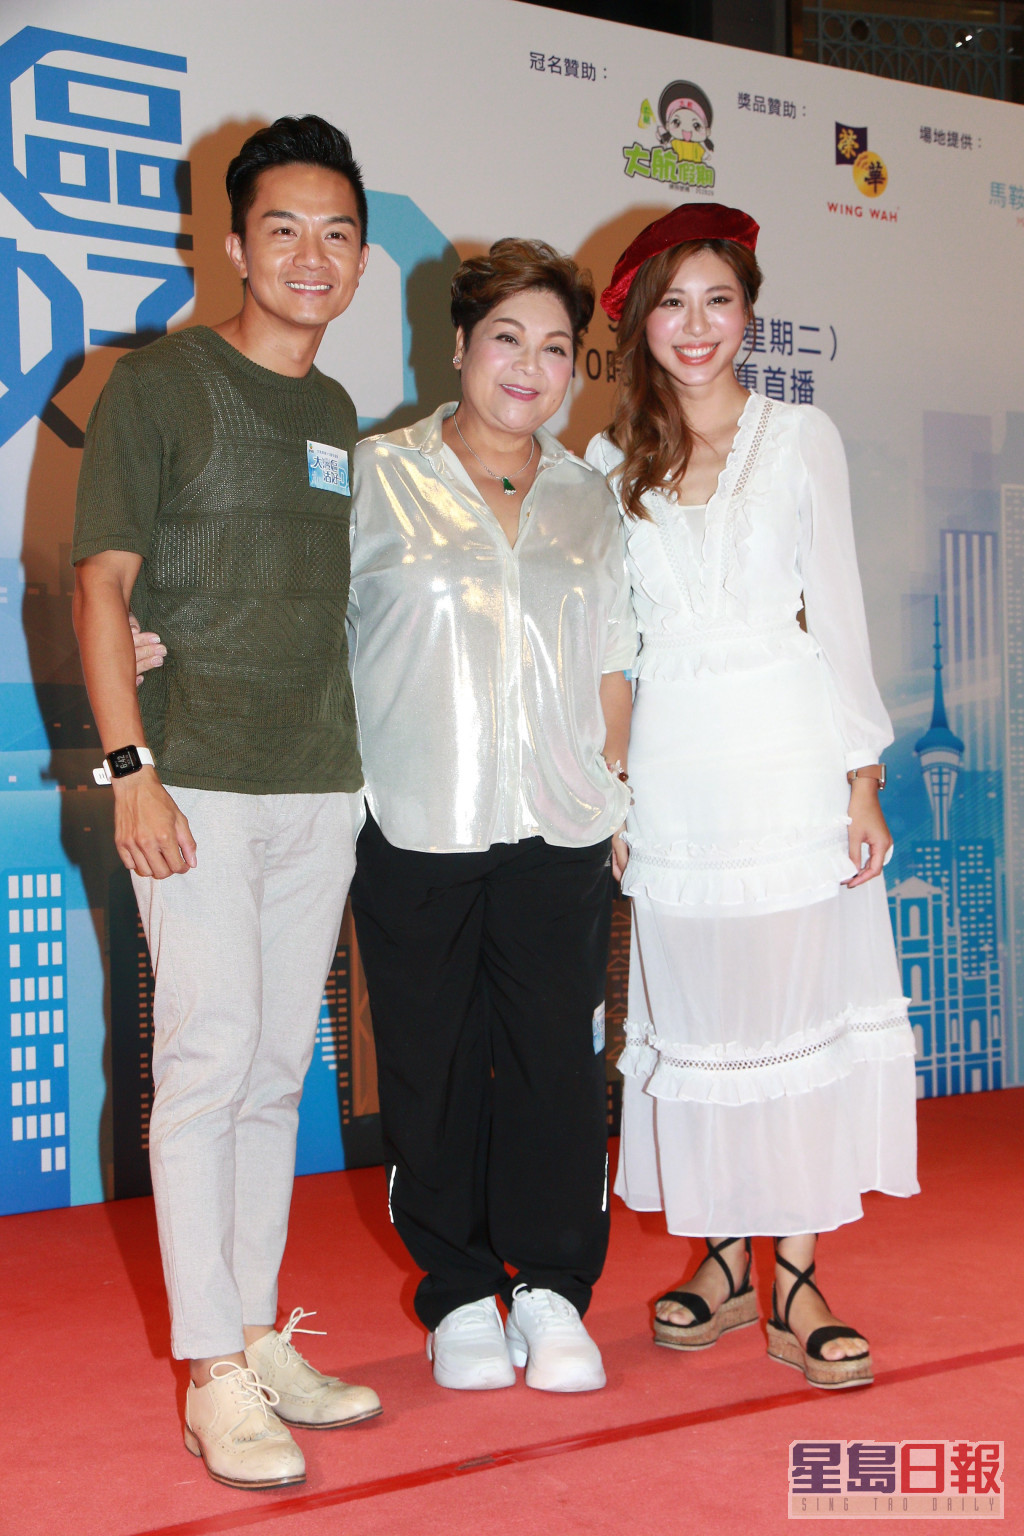 胡諾言近年較多做主持，他透露會繼續拍TVB節目。